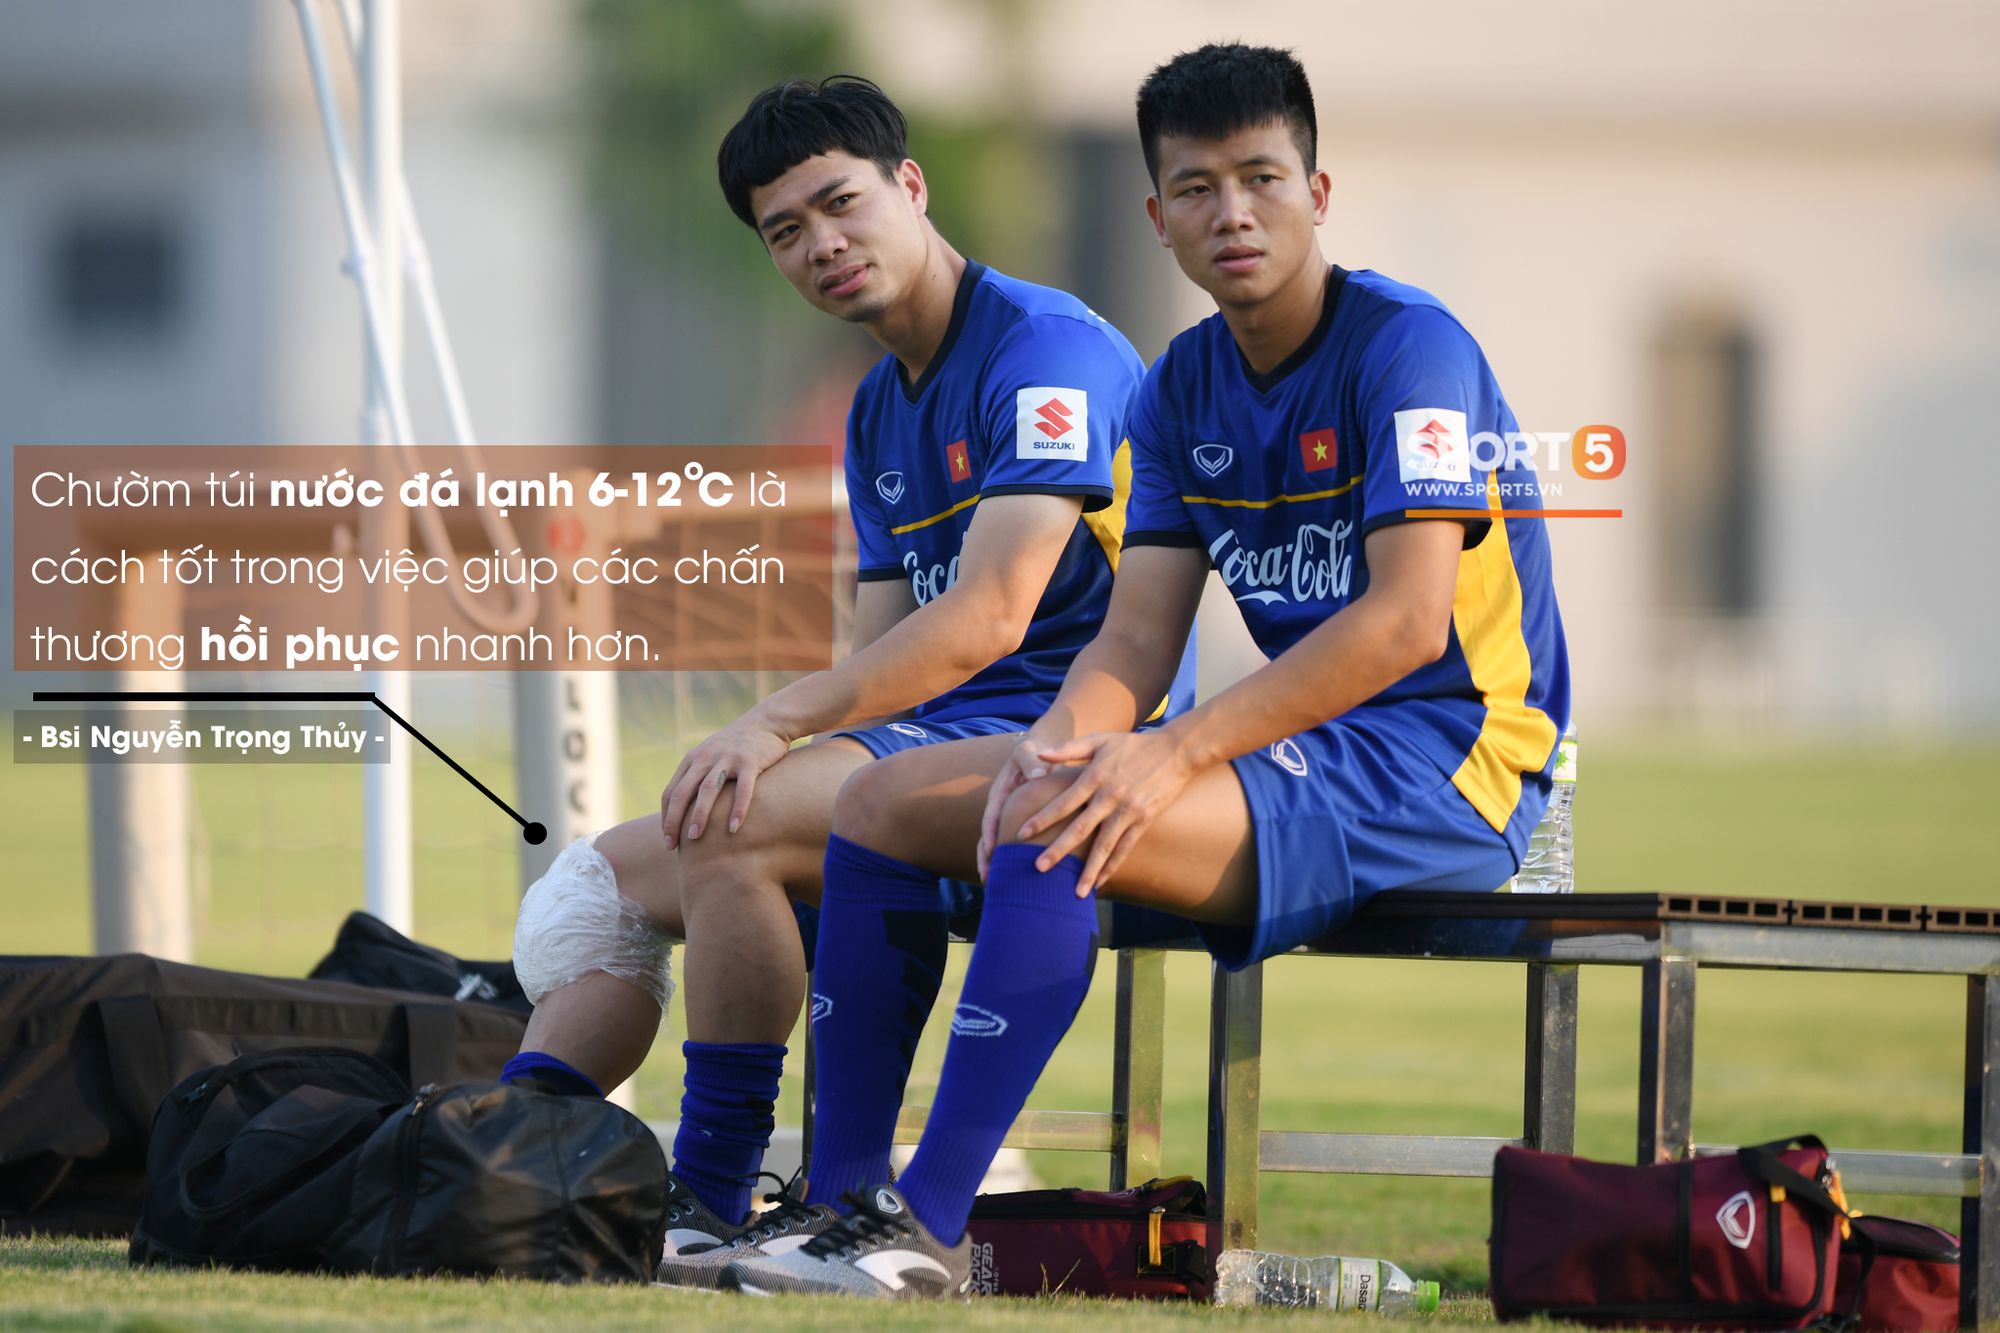 Tại sao các cầu thủ U23 Việt Nam lại chườm đá sau khi tập luyện và thi đấu? - Ảnh 2.